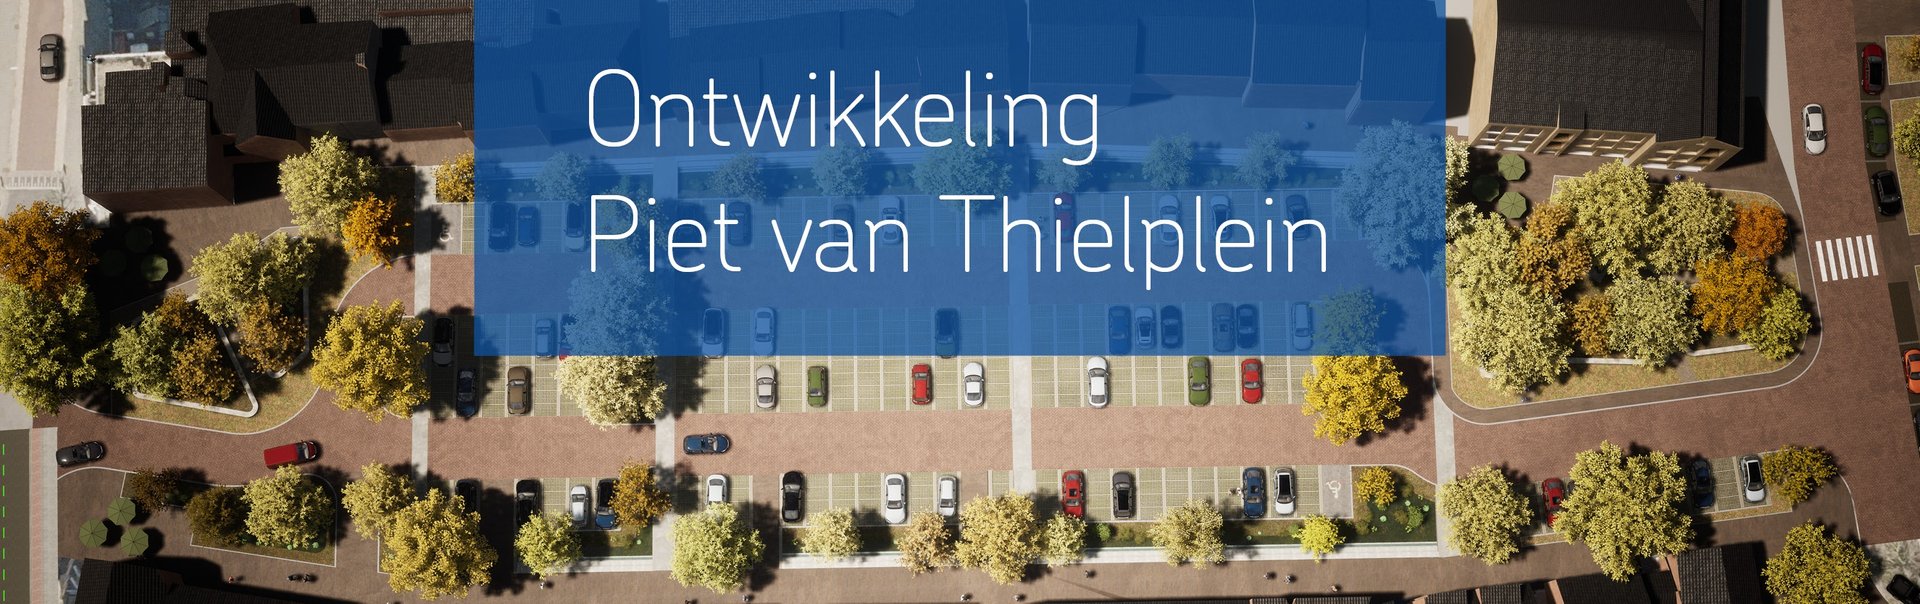 Foto van ontwikkelingsplan Piet van Thielplein 